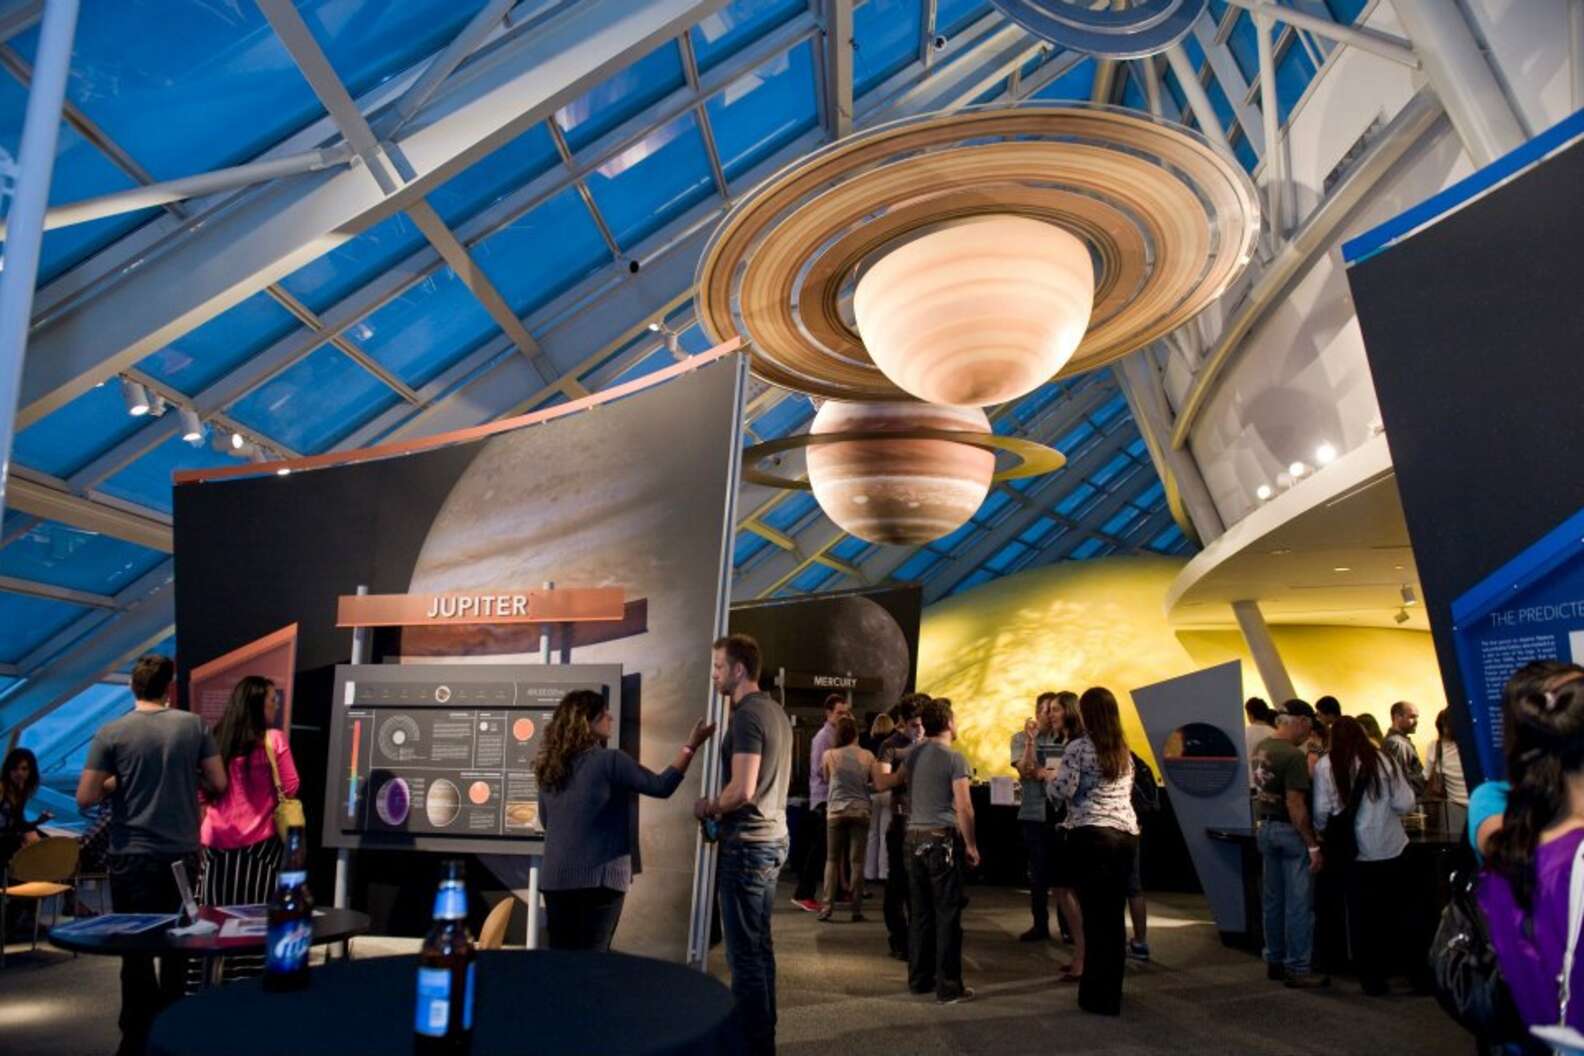 The Adler Planetarium